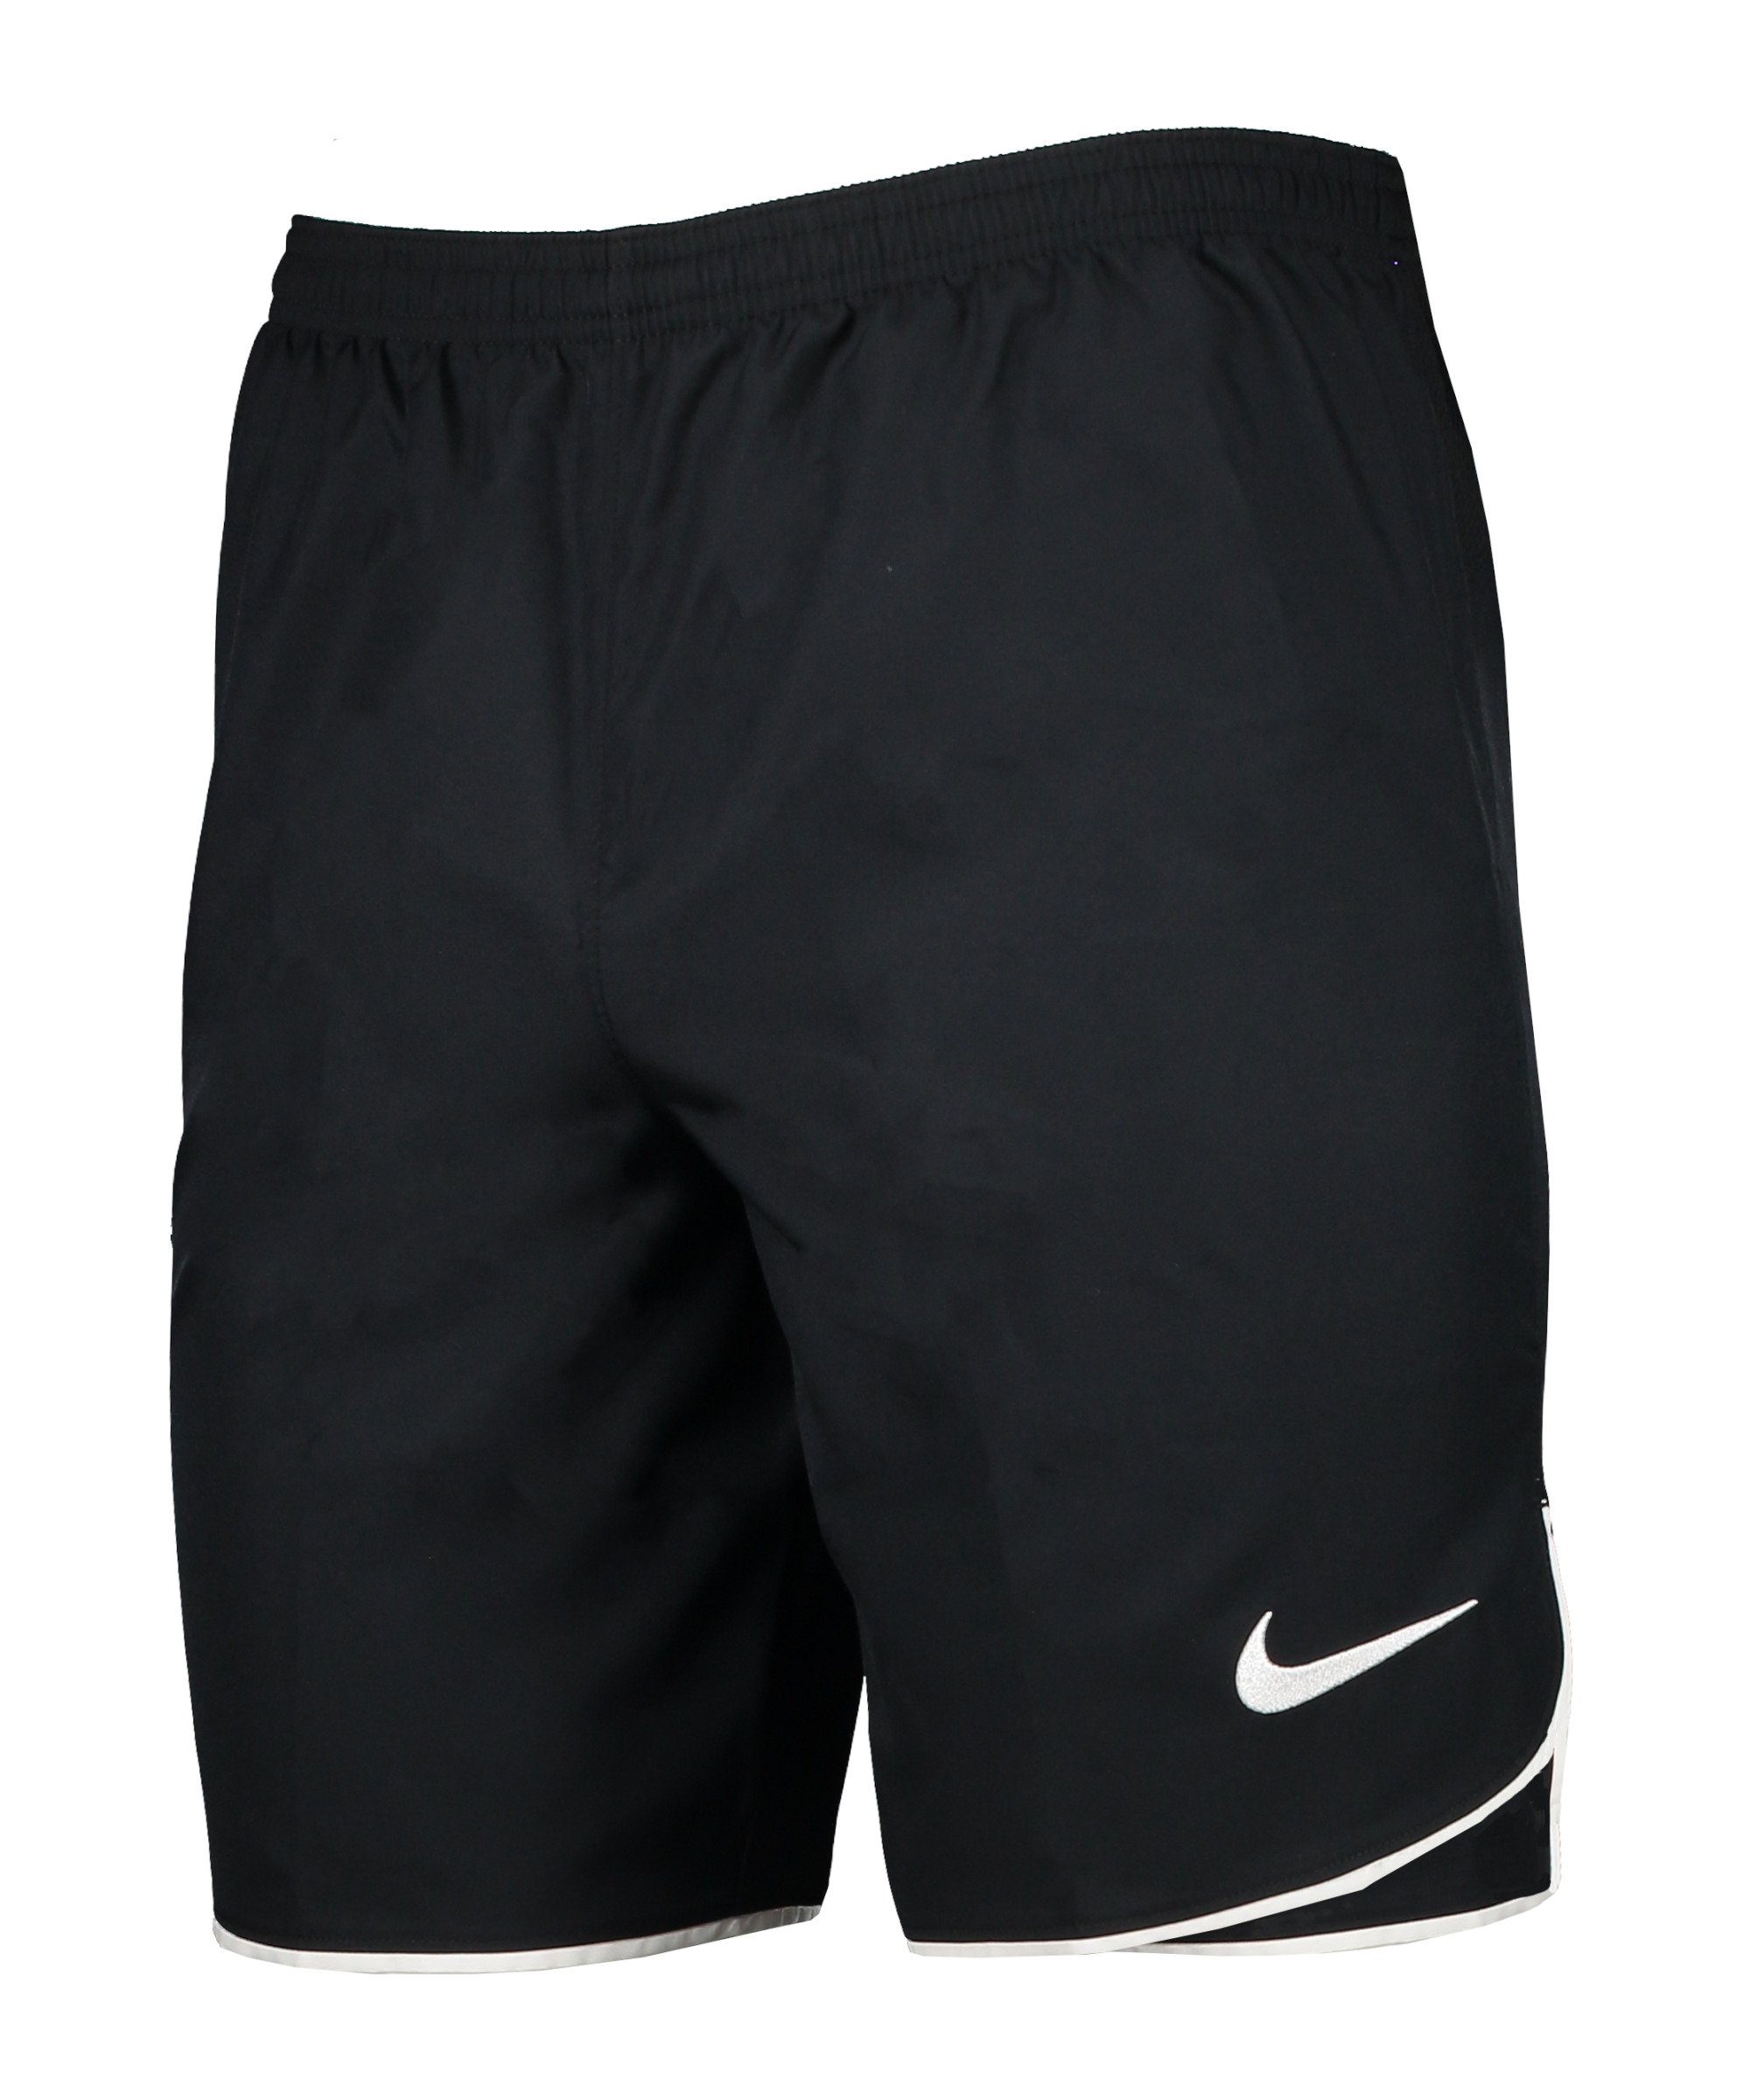 Nike Sporthose Laser V schwarzweiss Woven Short